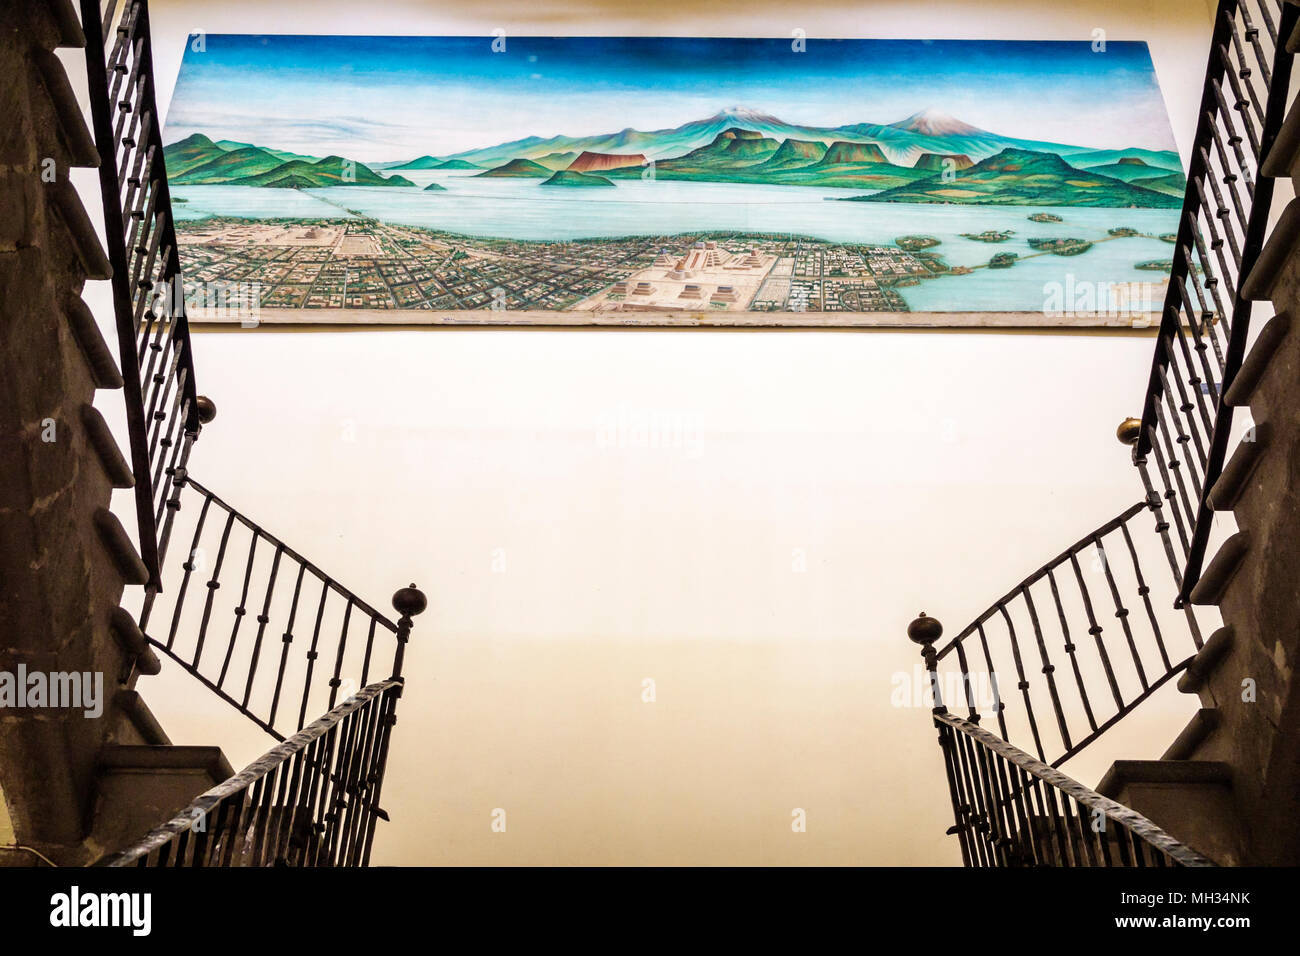 Ciudad DE MÉXICO,MEXICANO,HISPANICO,CENTRO HISTÓRICO,Museo de la Ciudad de México,escalera,barandilla,pintura,16th Siglo XVI Tenochtitlan panor Foto de stock